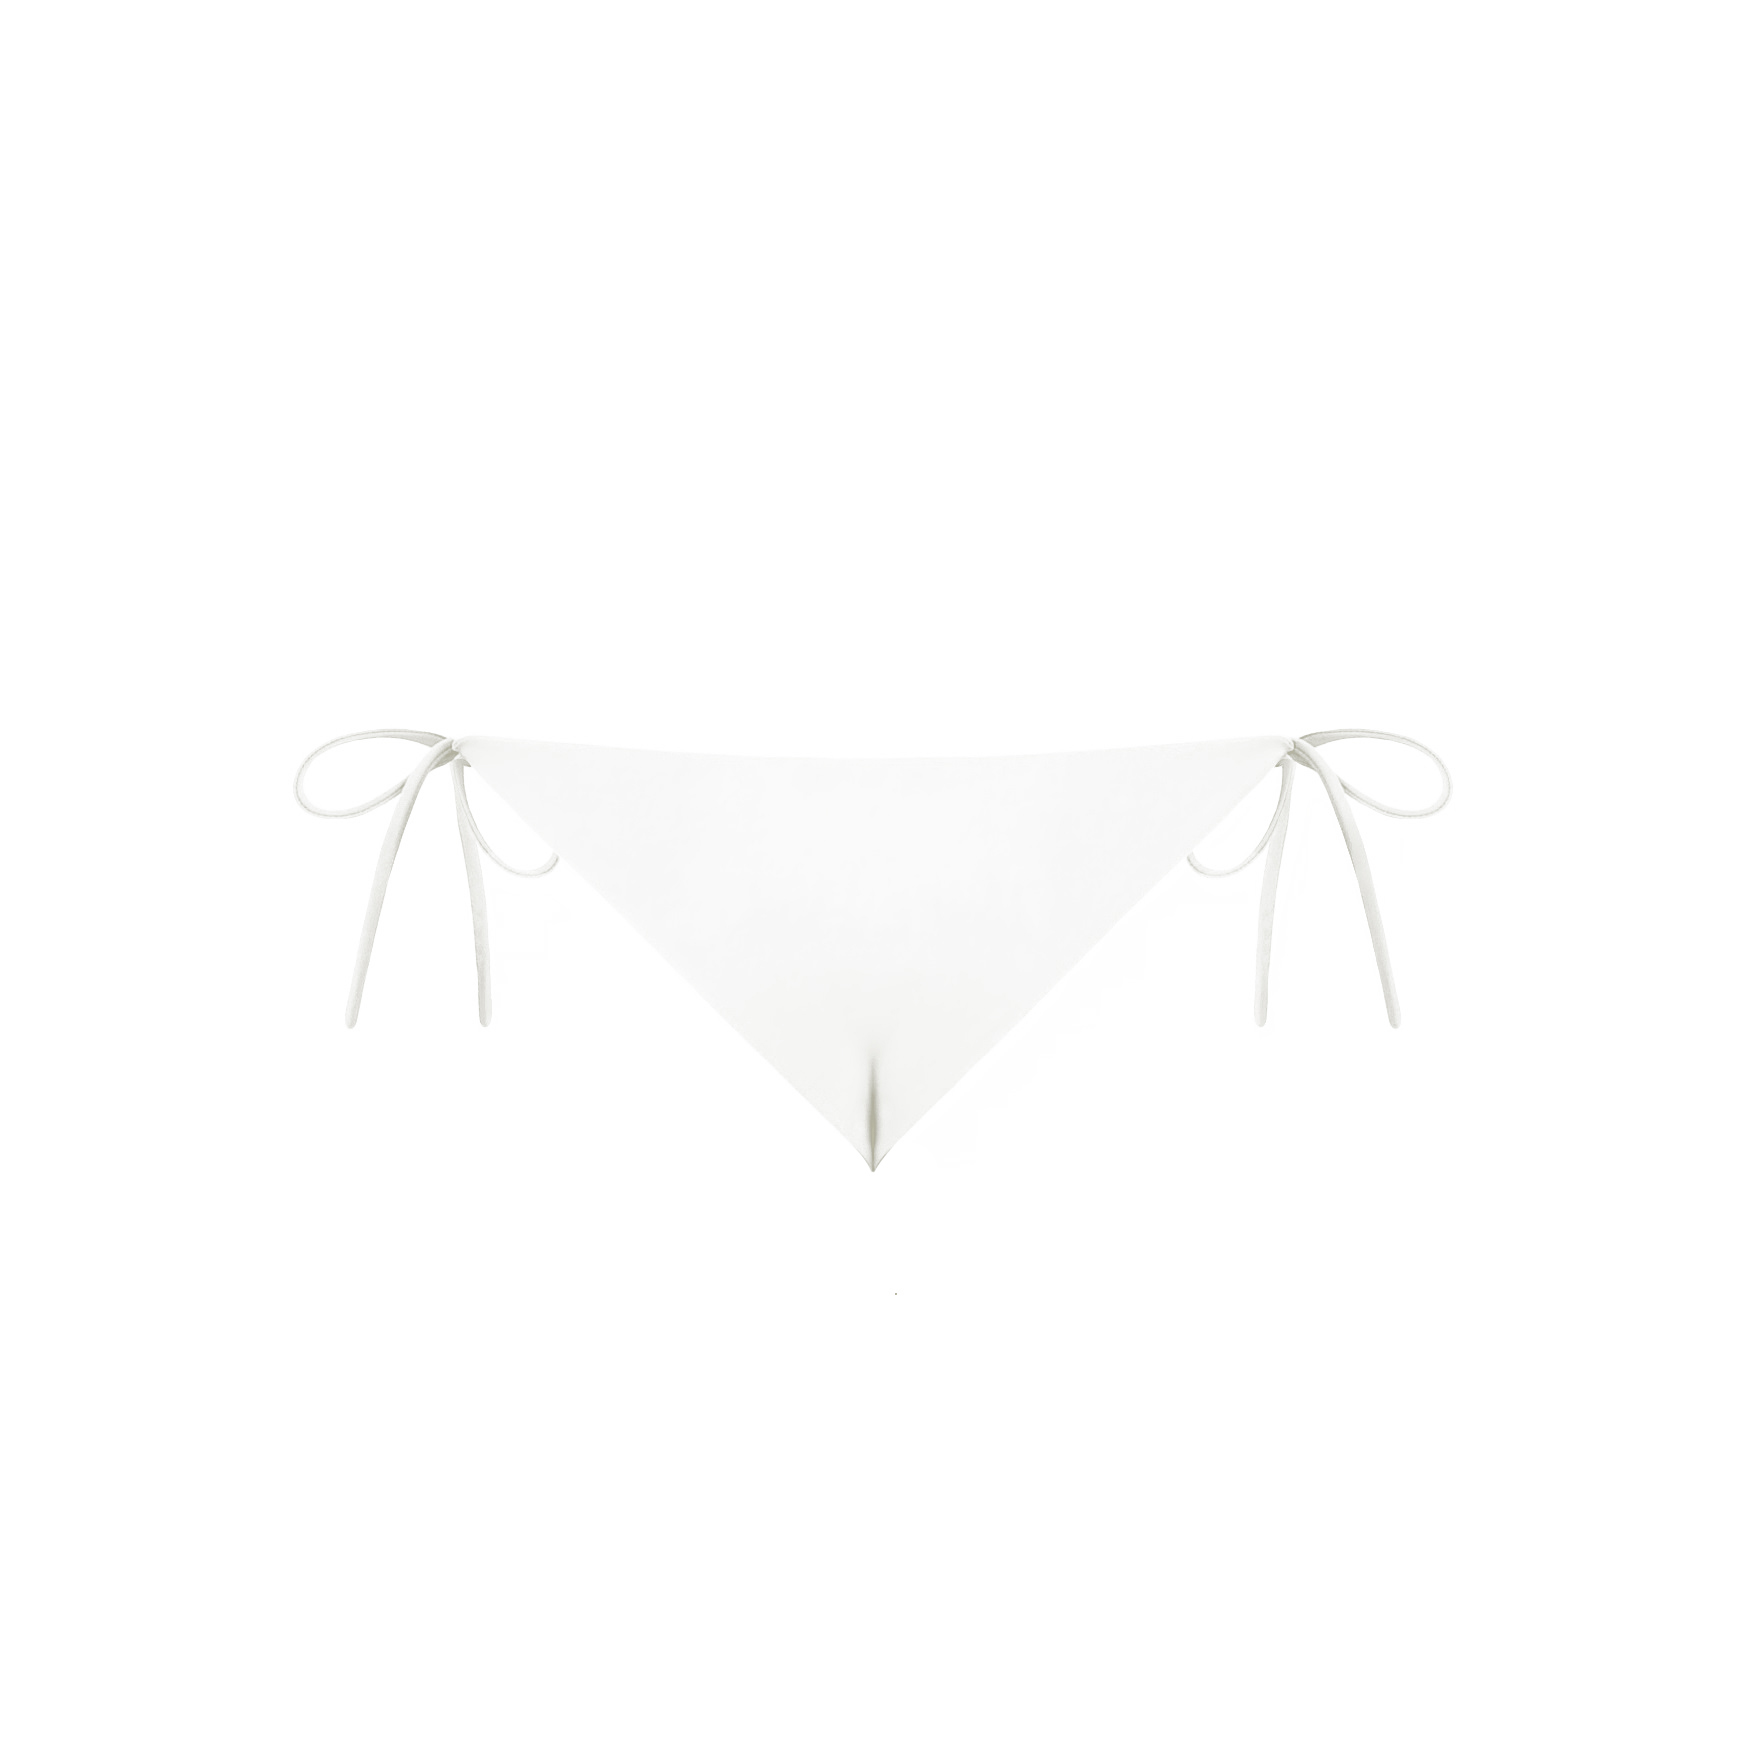 acaia dół kremowy ecru polska marka kostium kąpielowy wiązany bikini cream bikini bottom swimwear swimsuit spaghetti straps